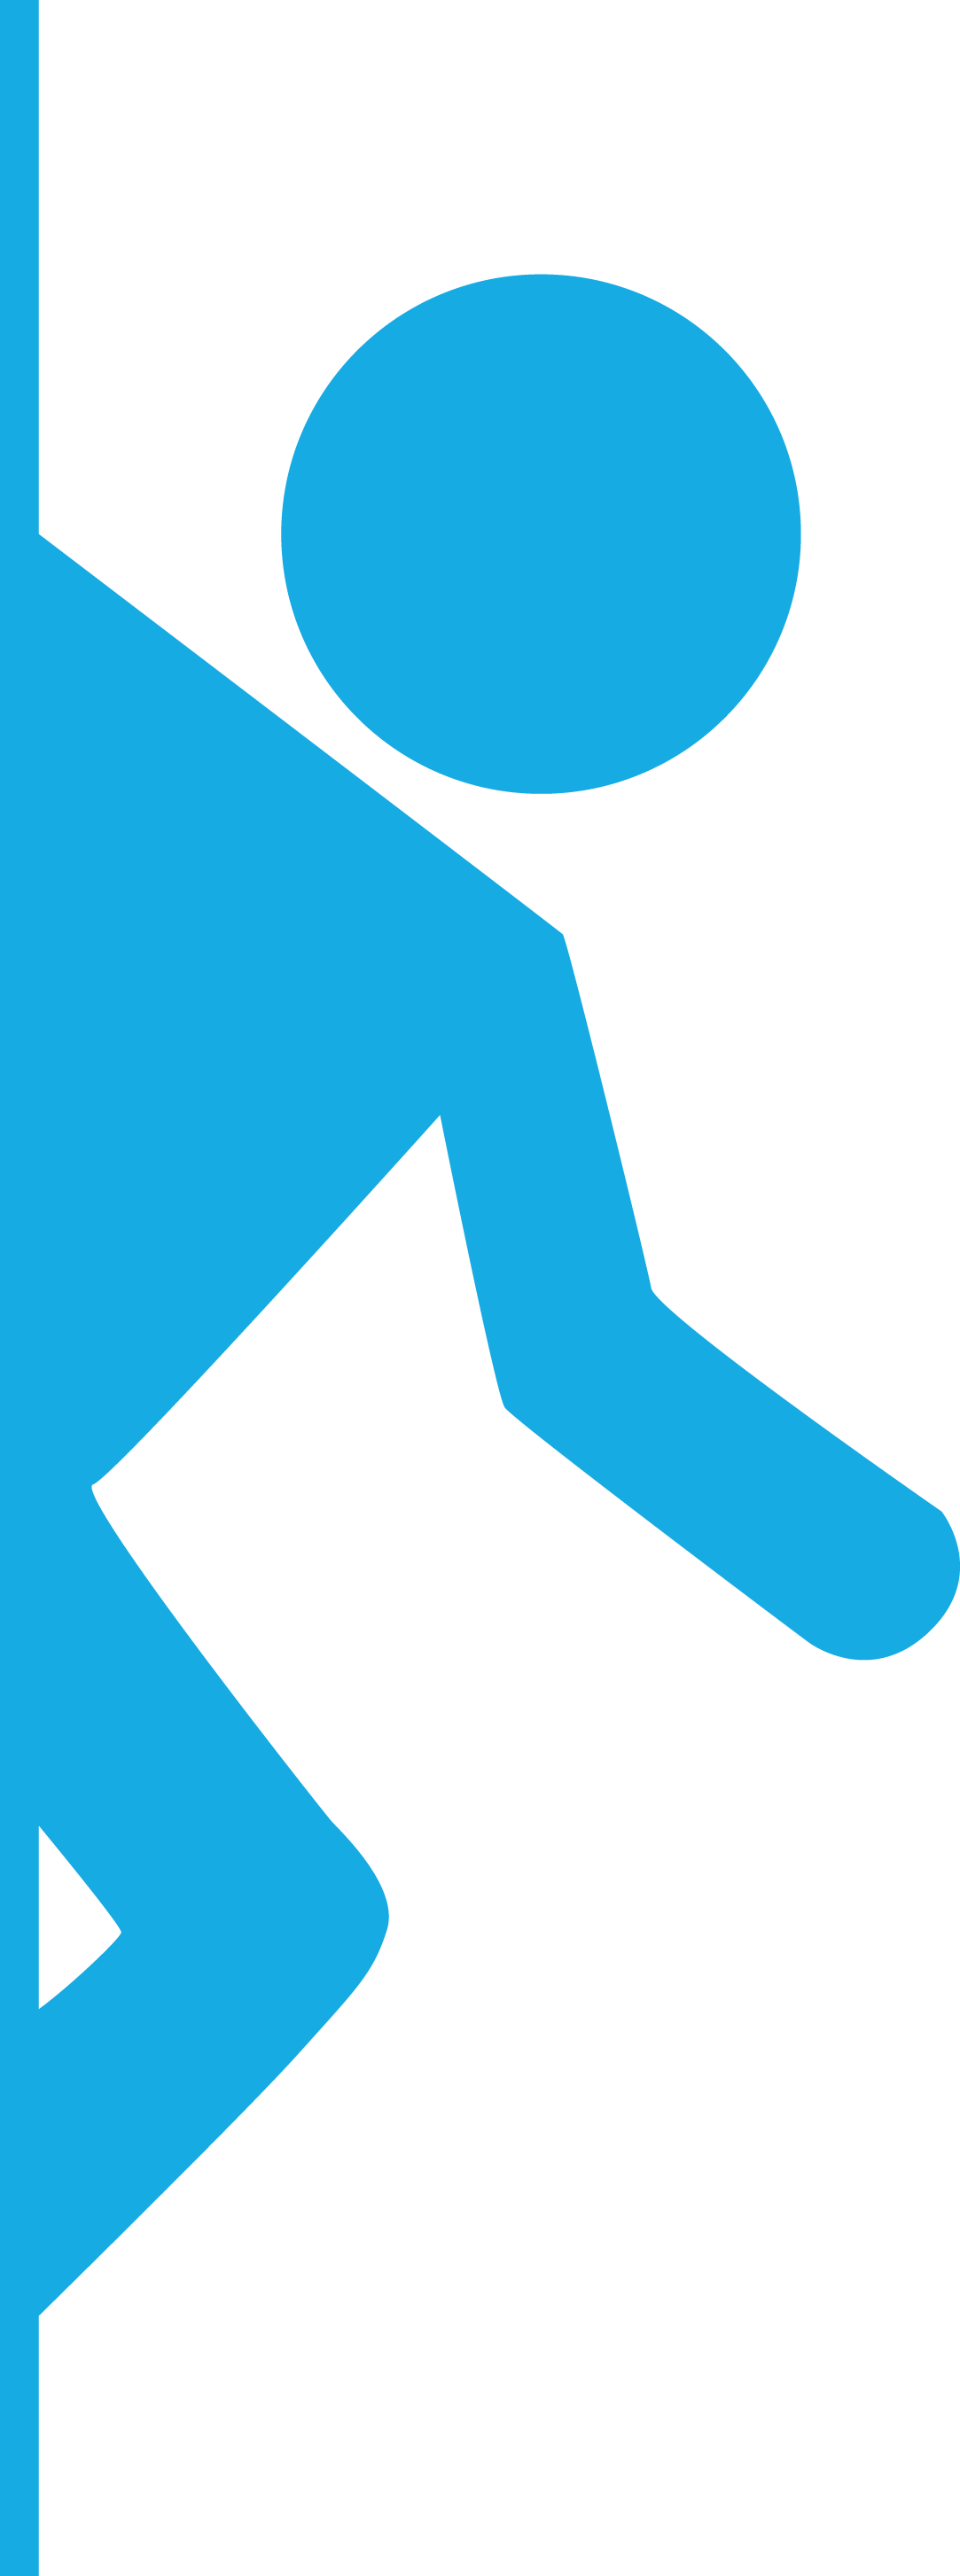 Portal 2 Logo